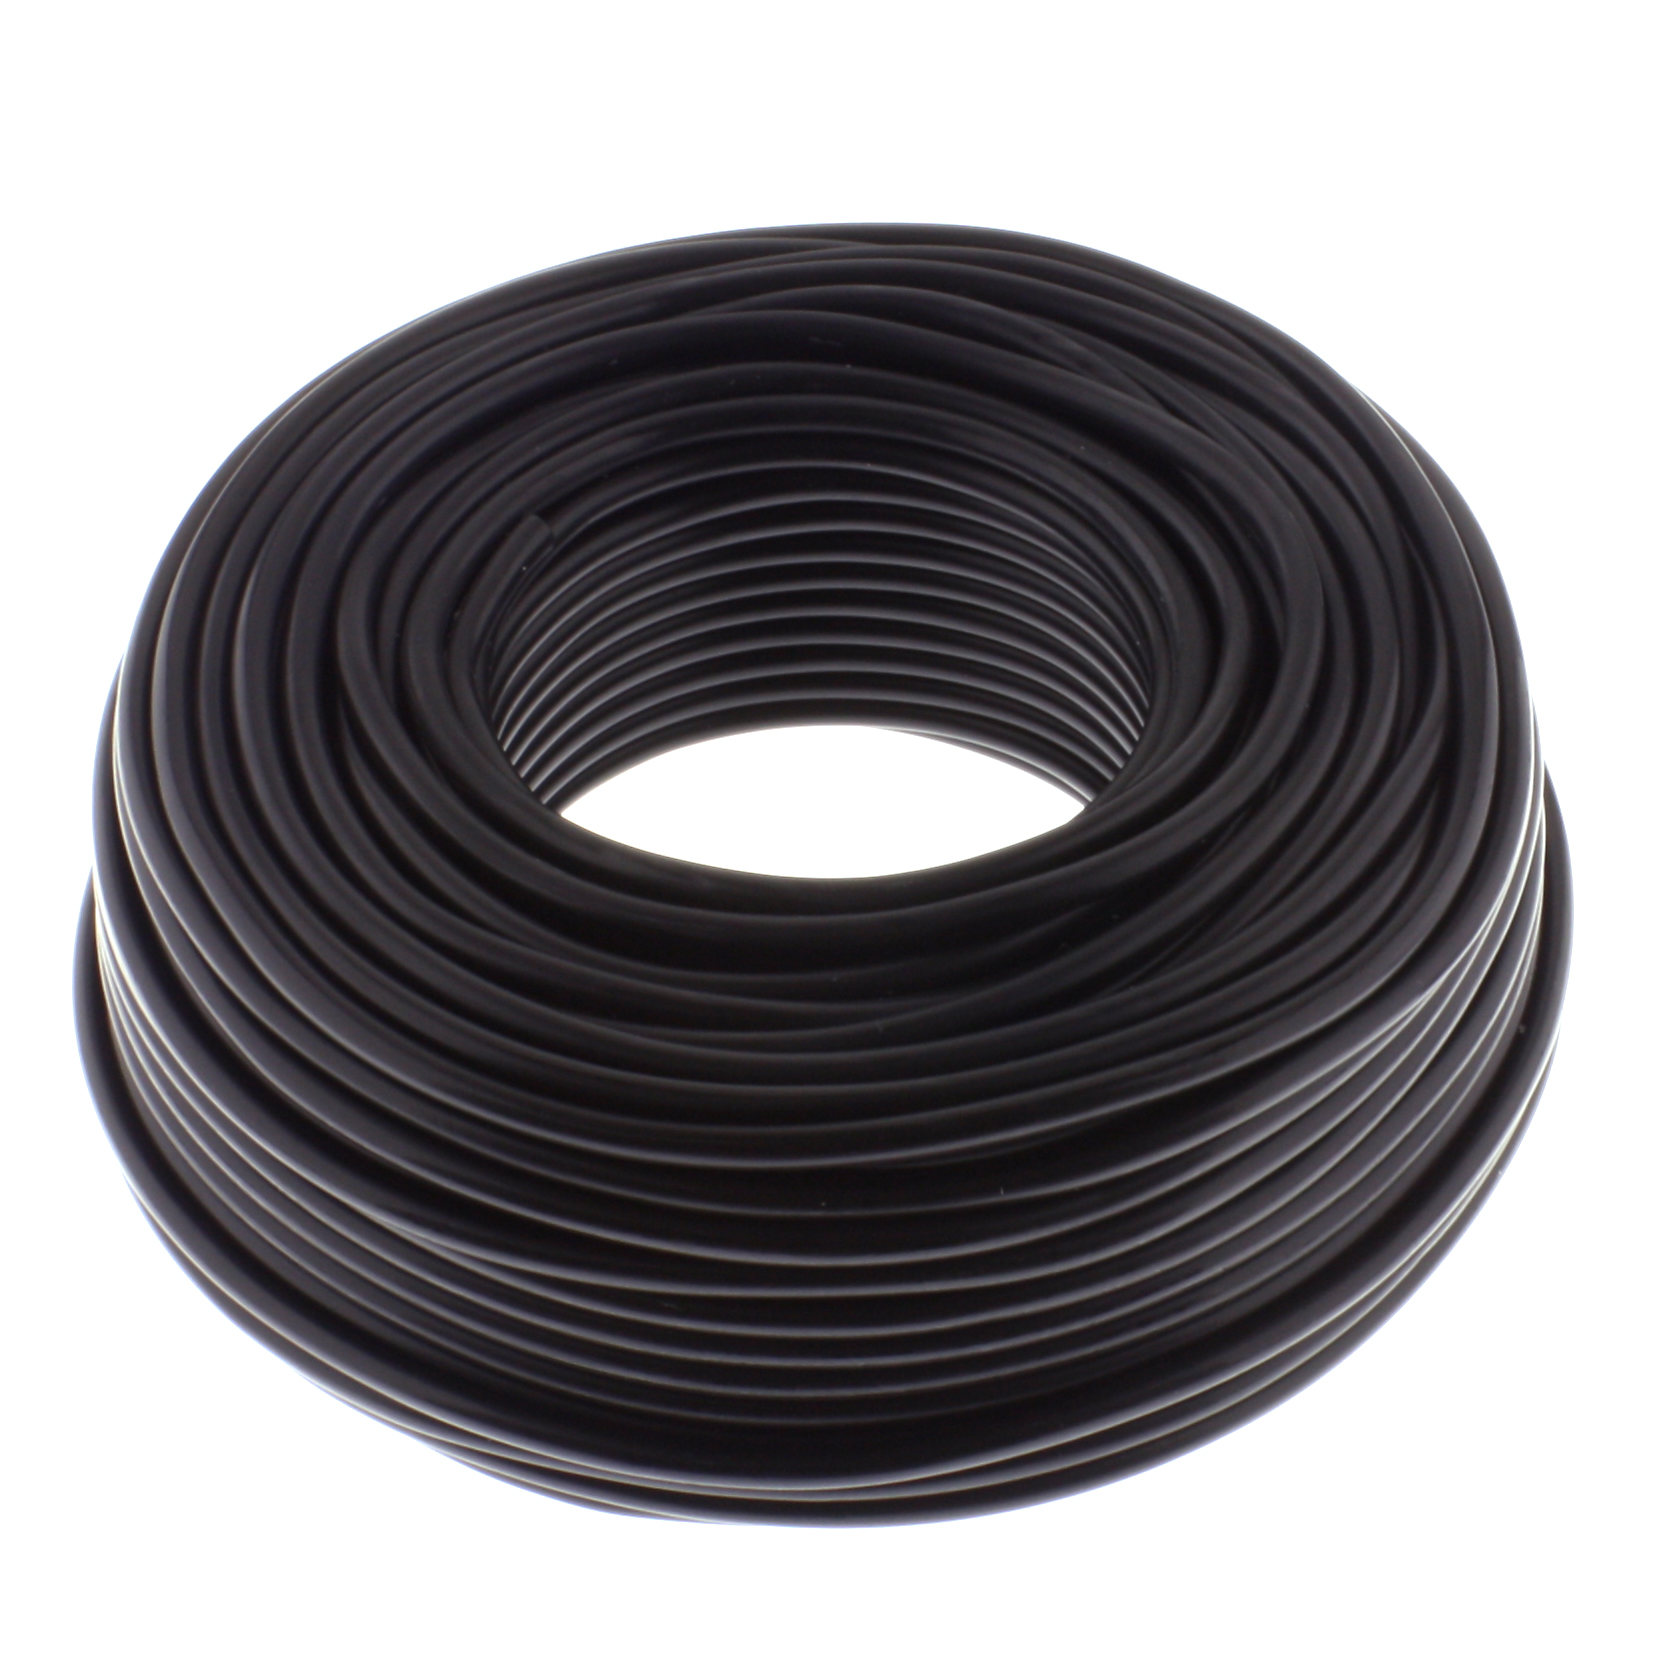 Loudspeaker cable ROUND 0,75mm, CCA, 50M, black